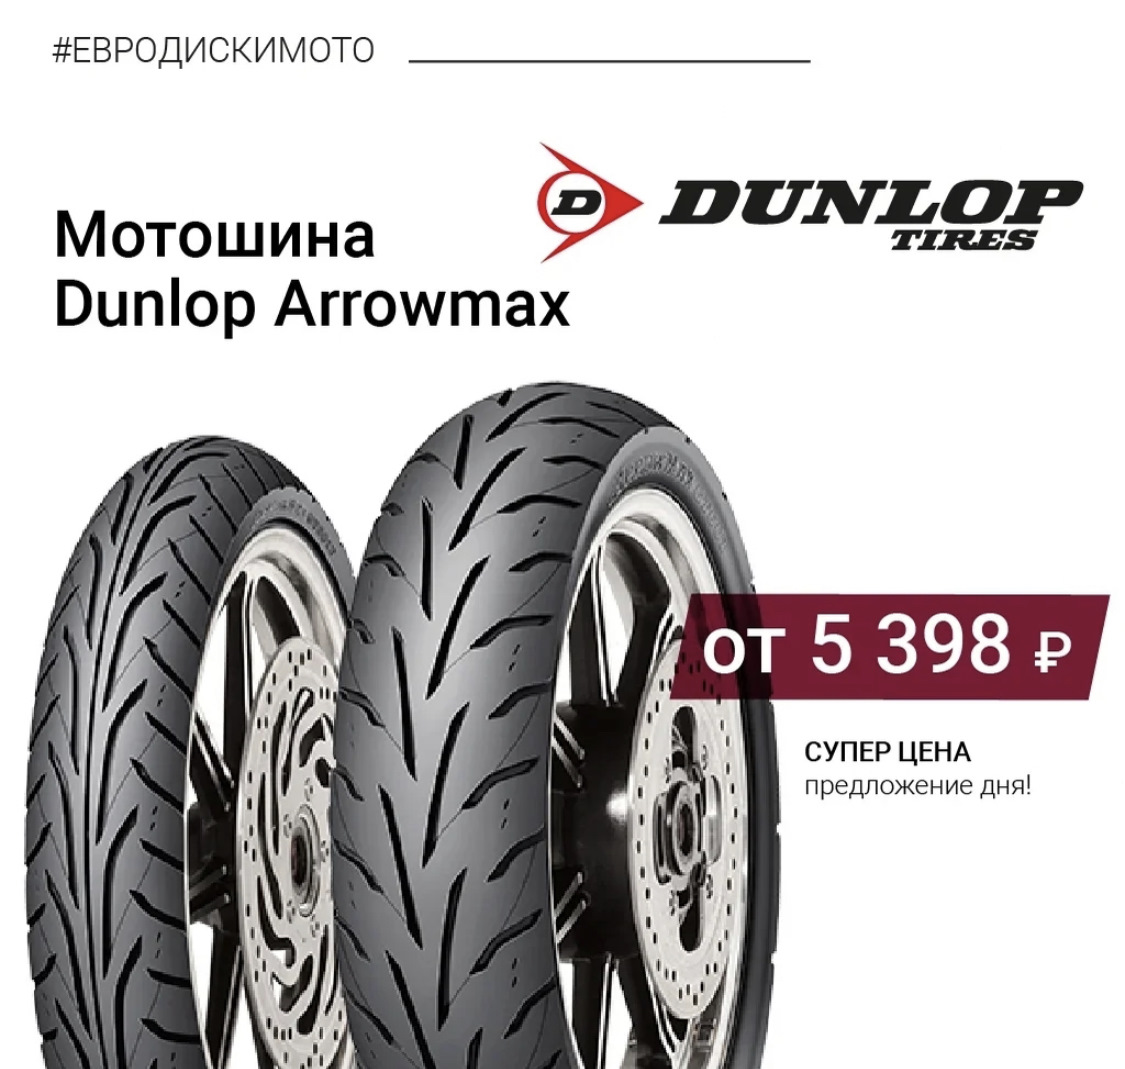 Евро диски интернет магазин шин в москве. Dunlop Arrowmax gt501. Dunlop Arrowmax. Euro-diski. Arrowmax as-13.